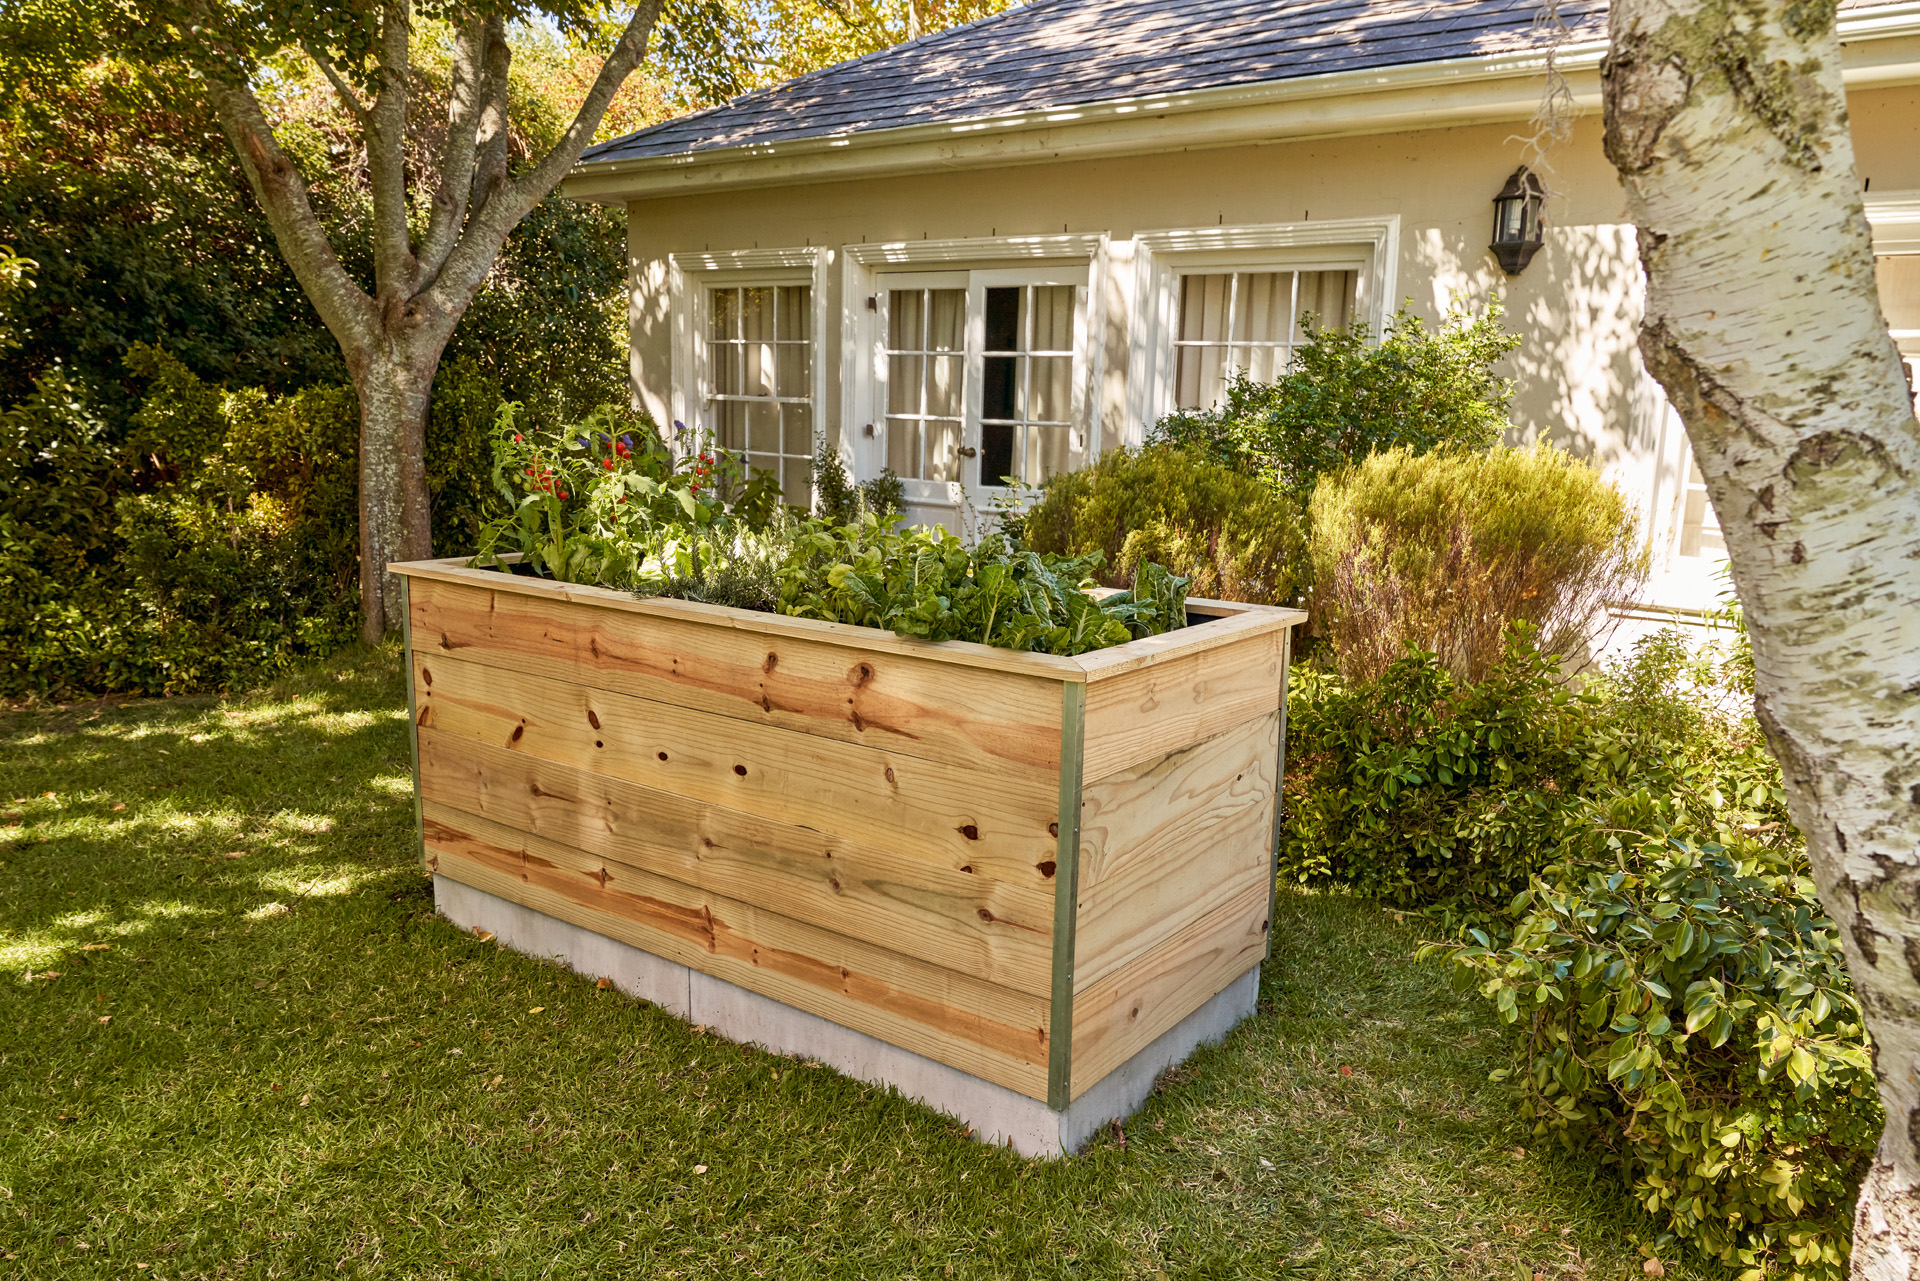 Una mesa de cultivo para huertos urbanos hecha con tablas de madera, en un jardín frente a una casa.